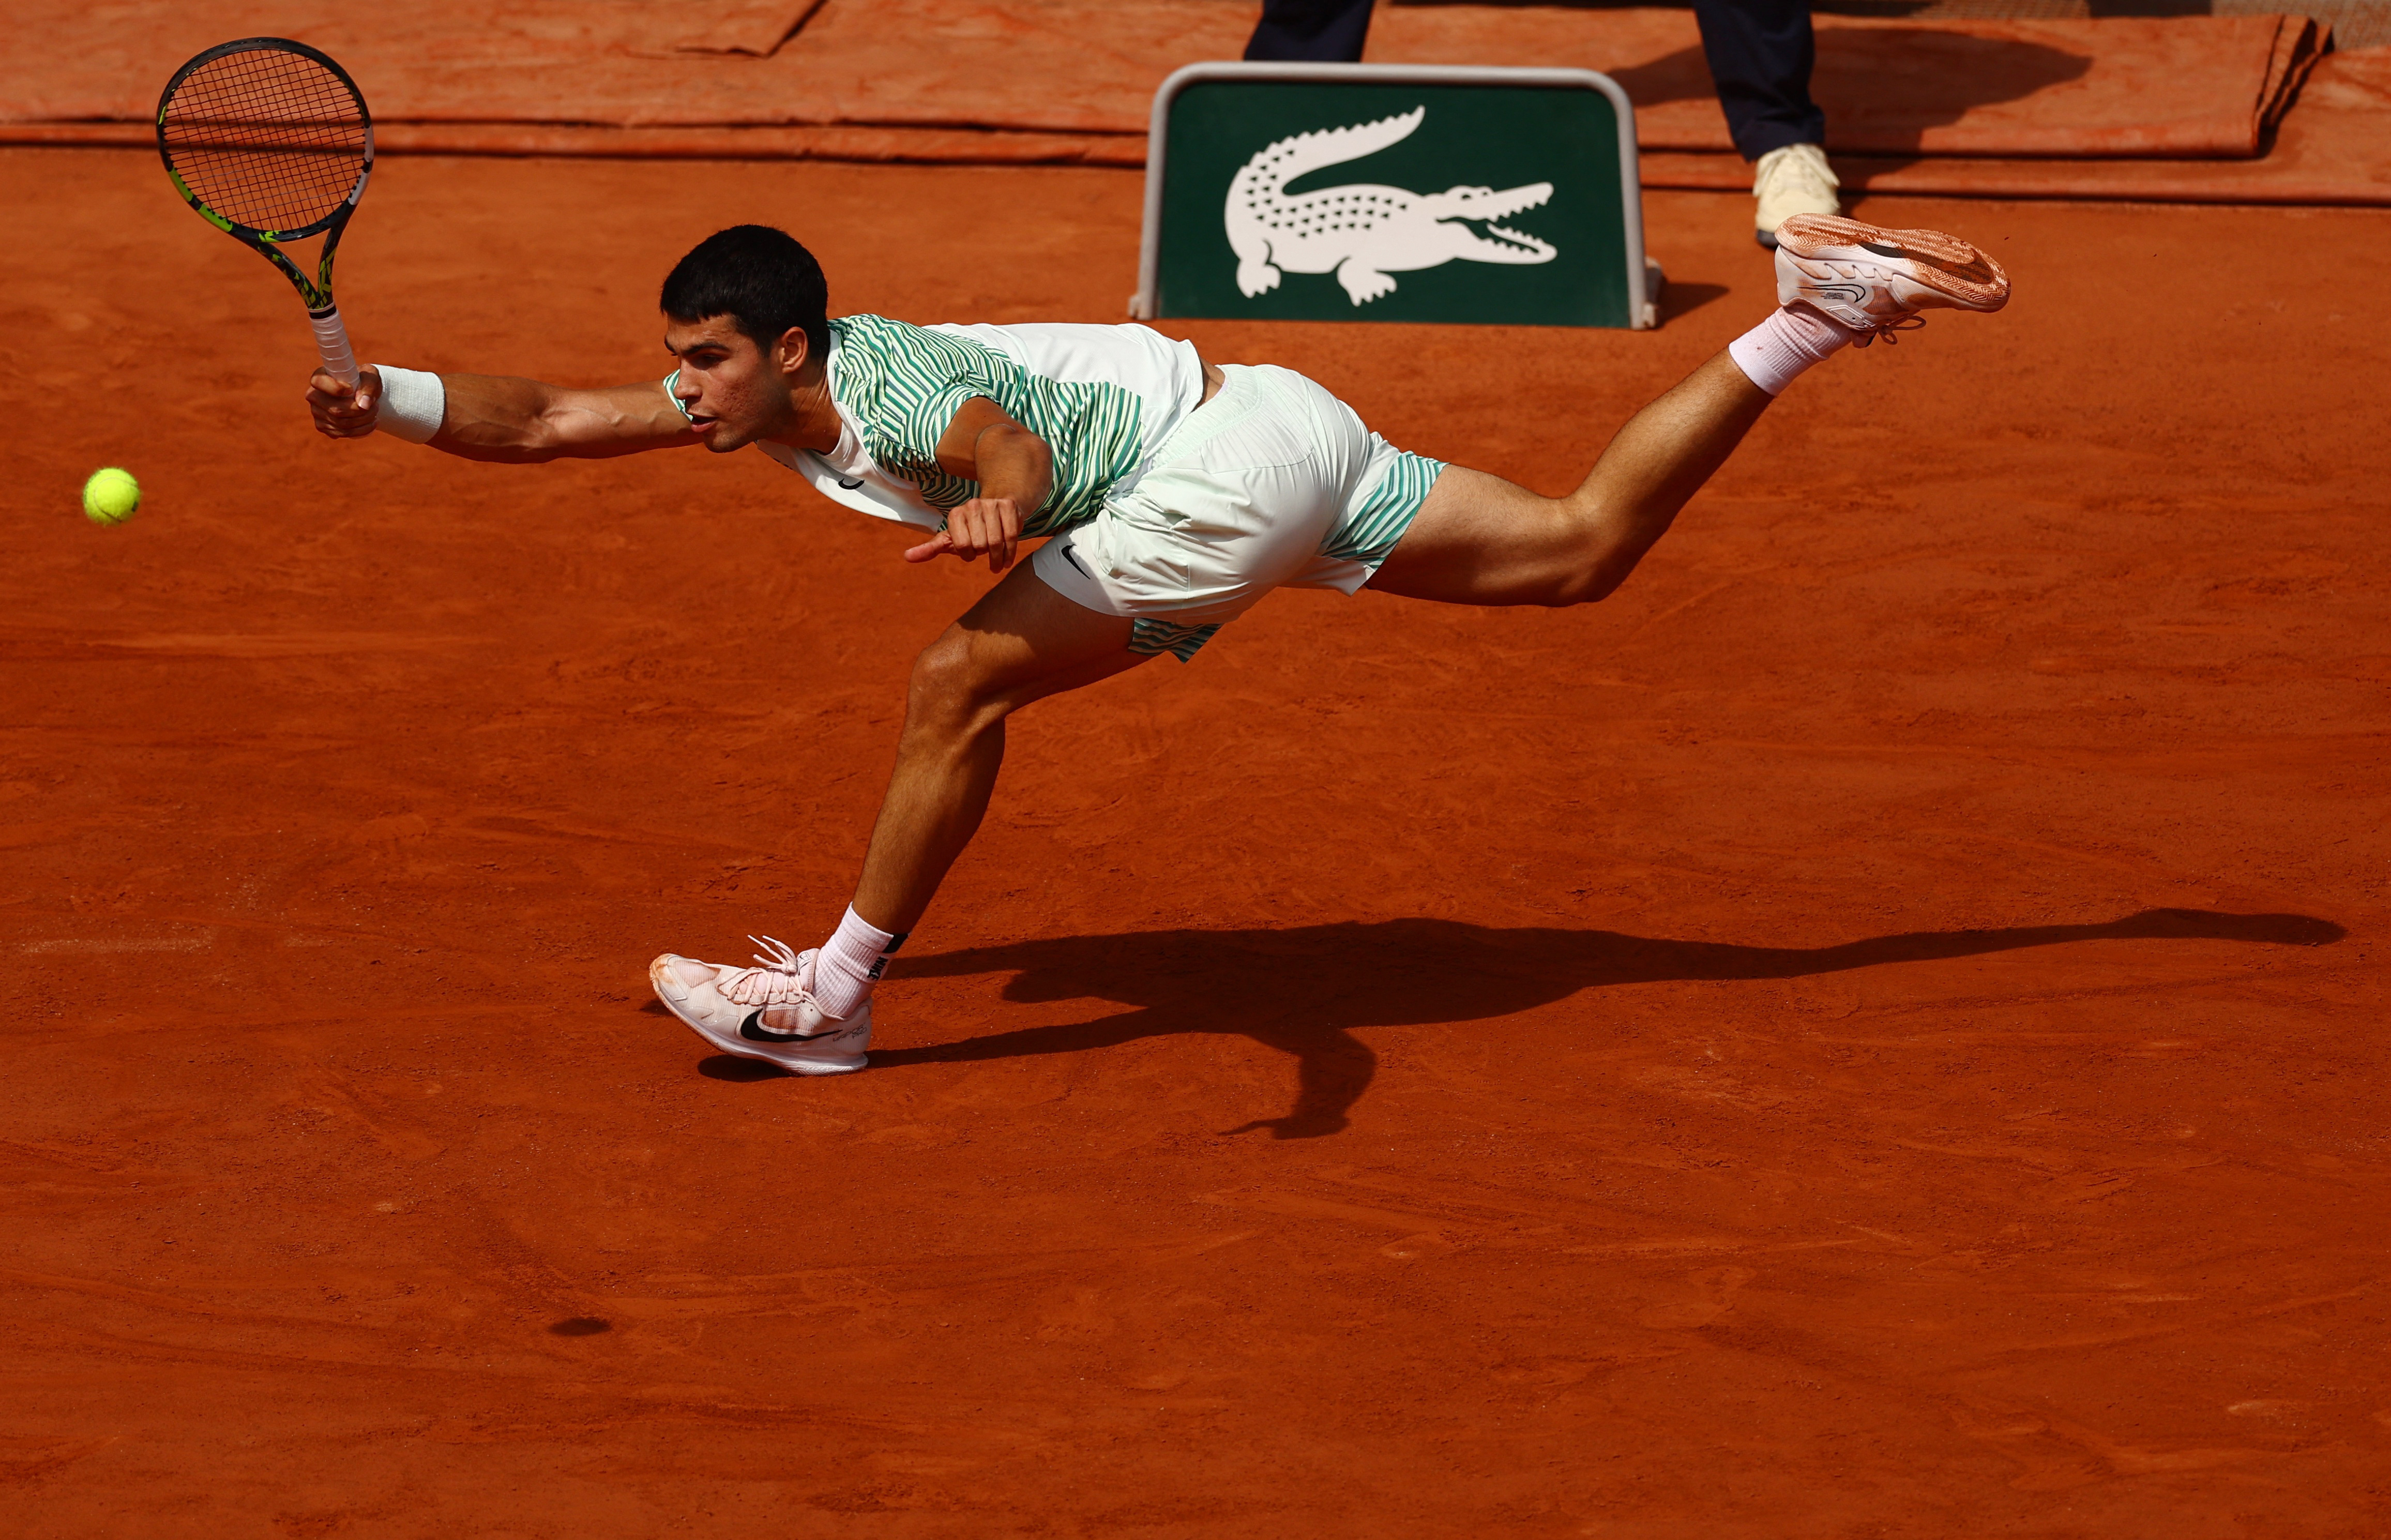 Alcaraz-Djokovic en Roland Garros, en directo: sigue en vivo el primer set que se ha llevado el serbio